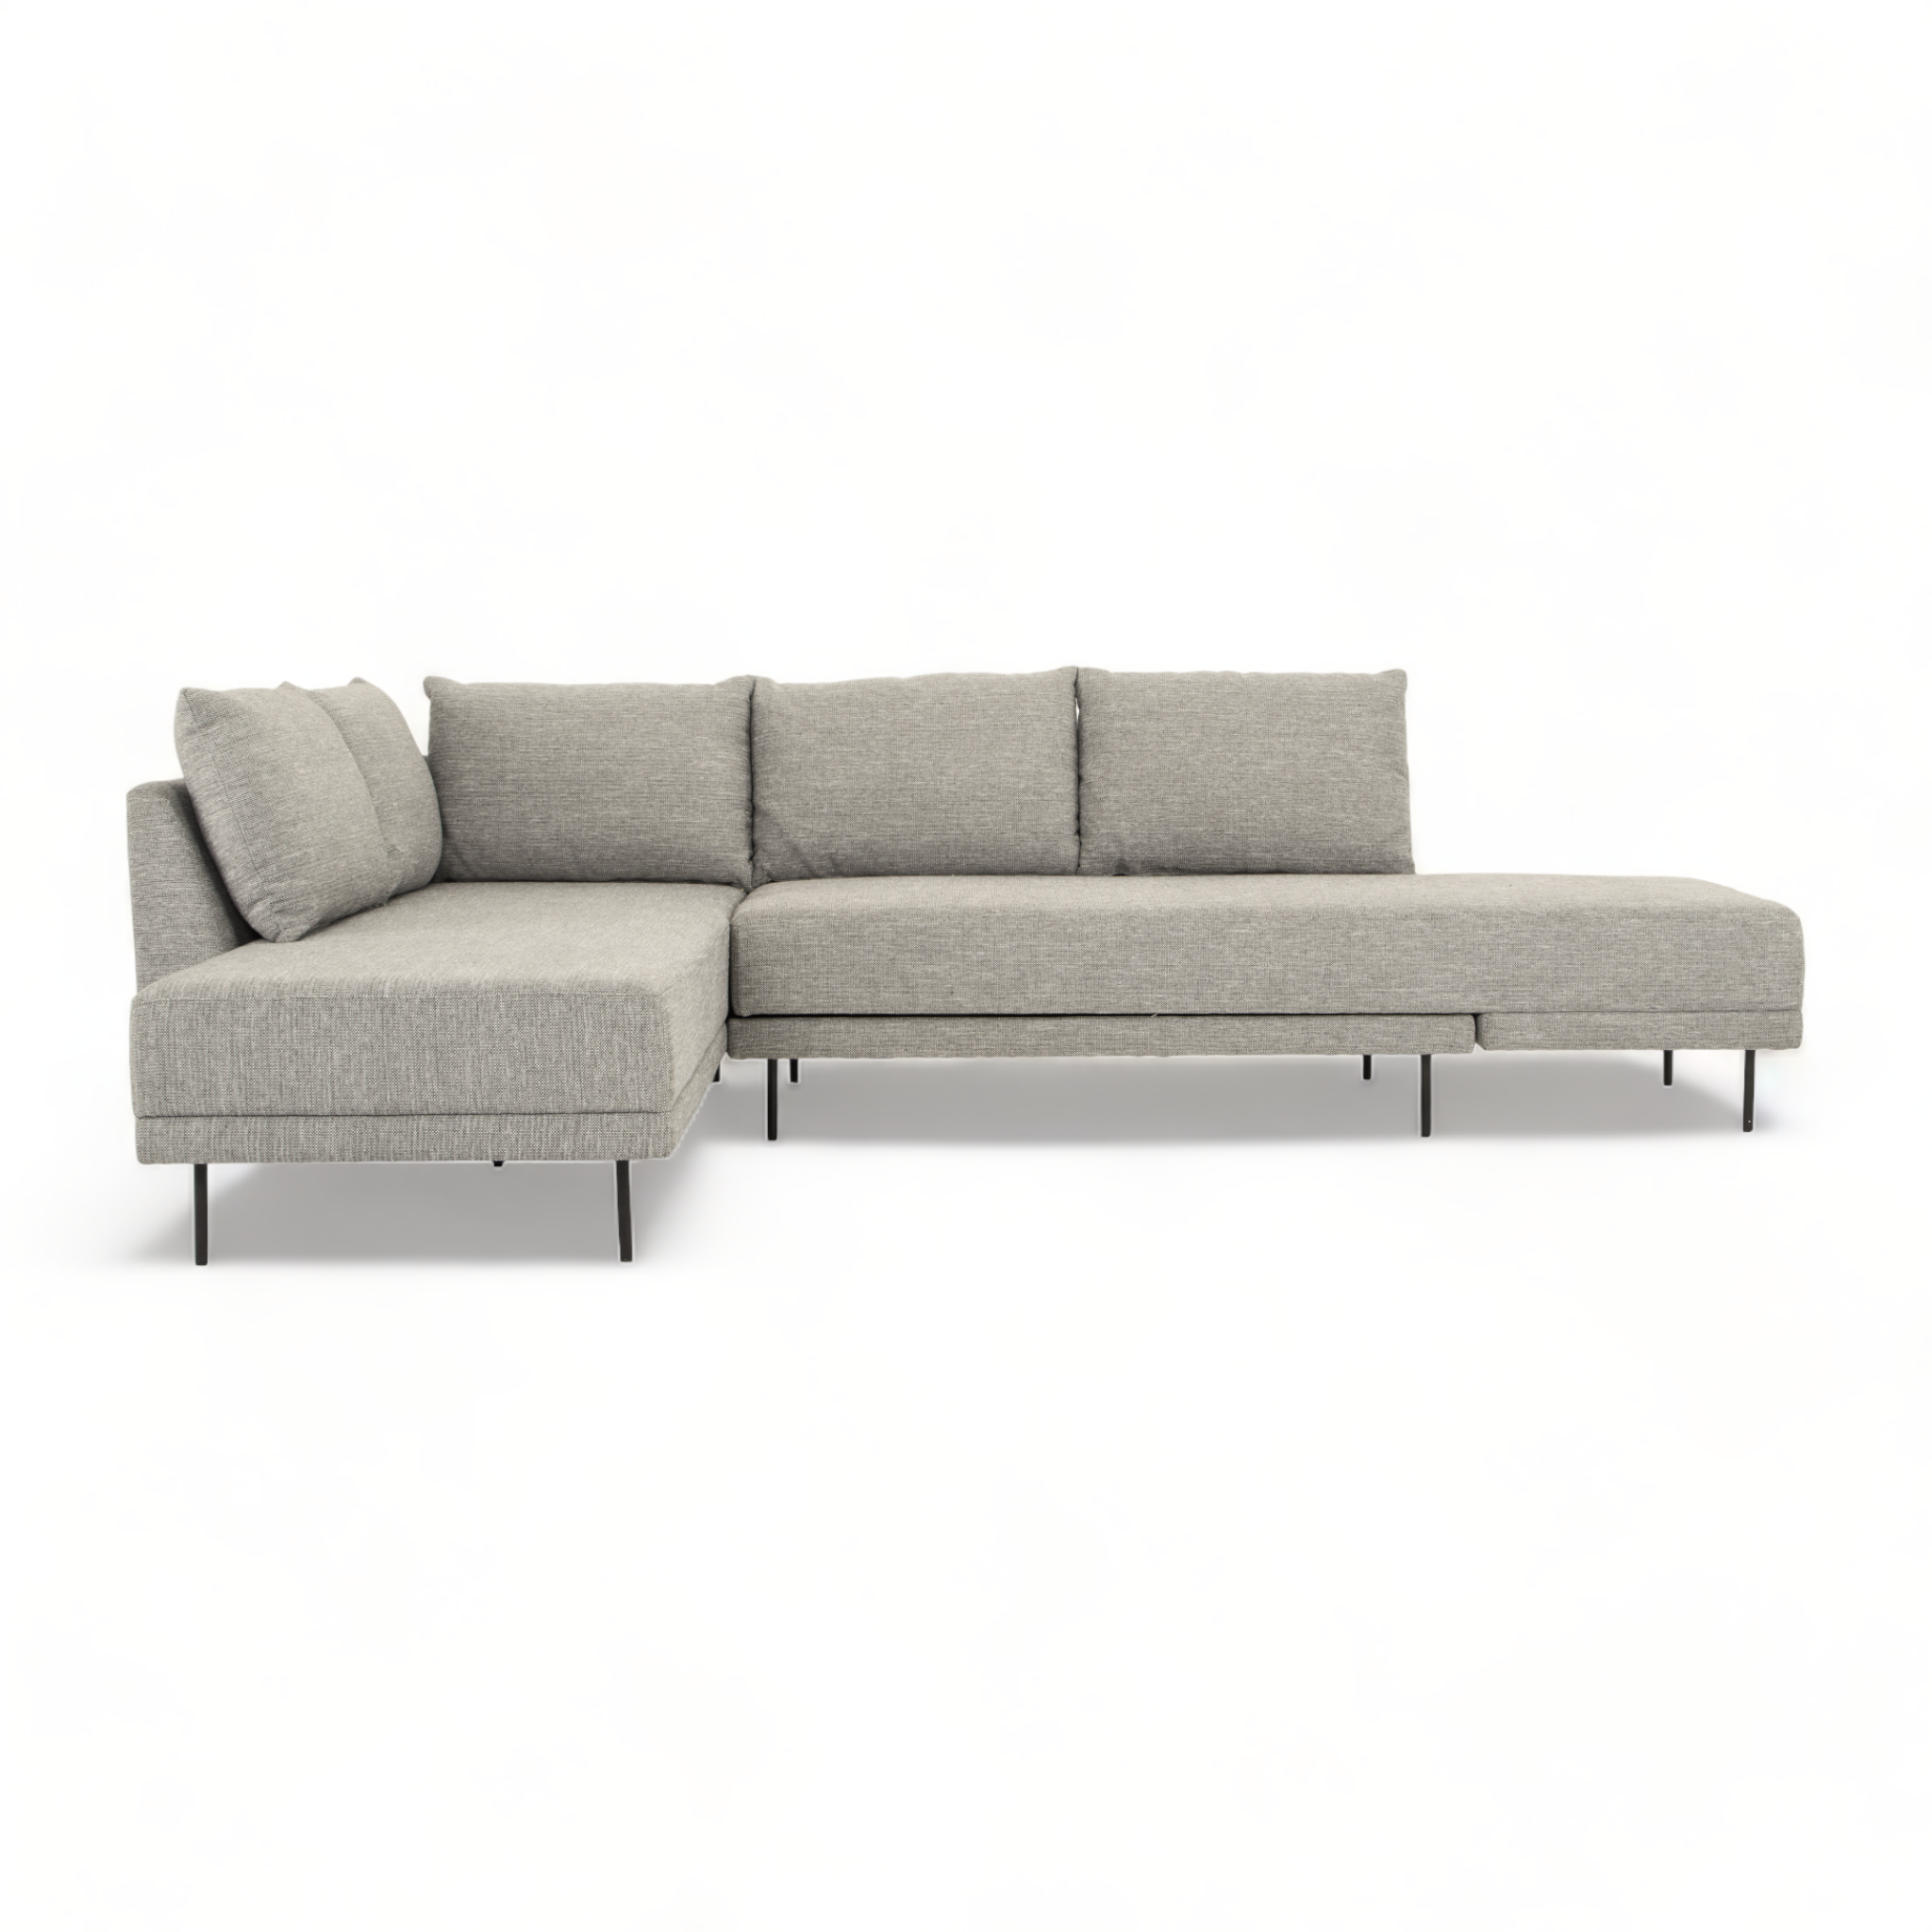 Doolin Sleeper Grey-Taupe Sofa Bed